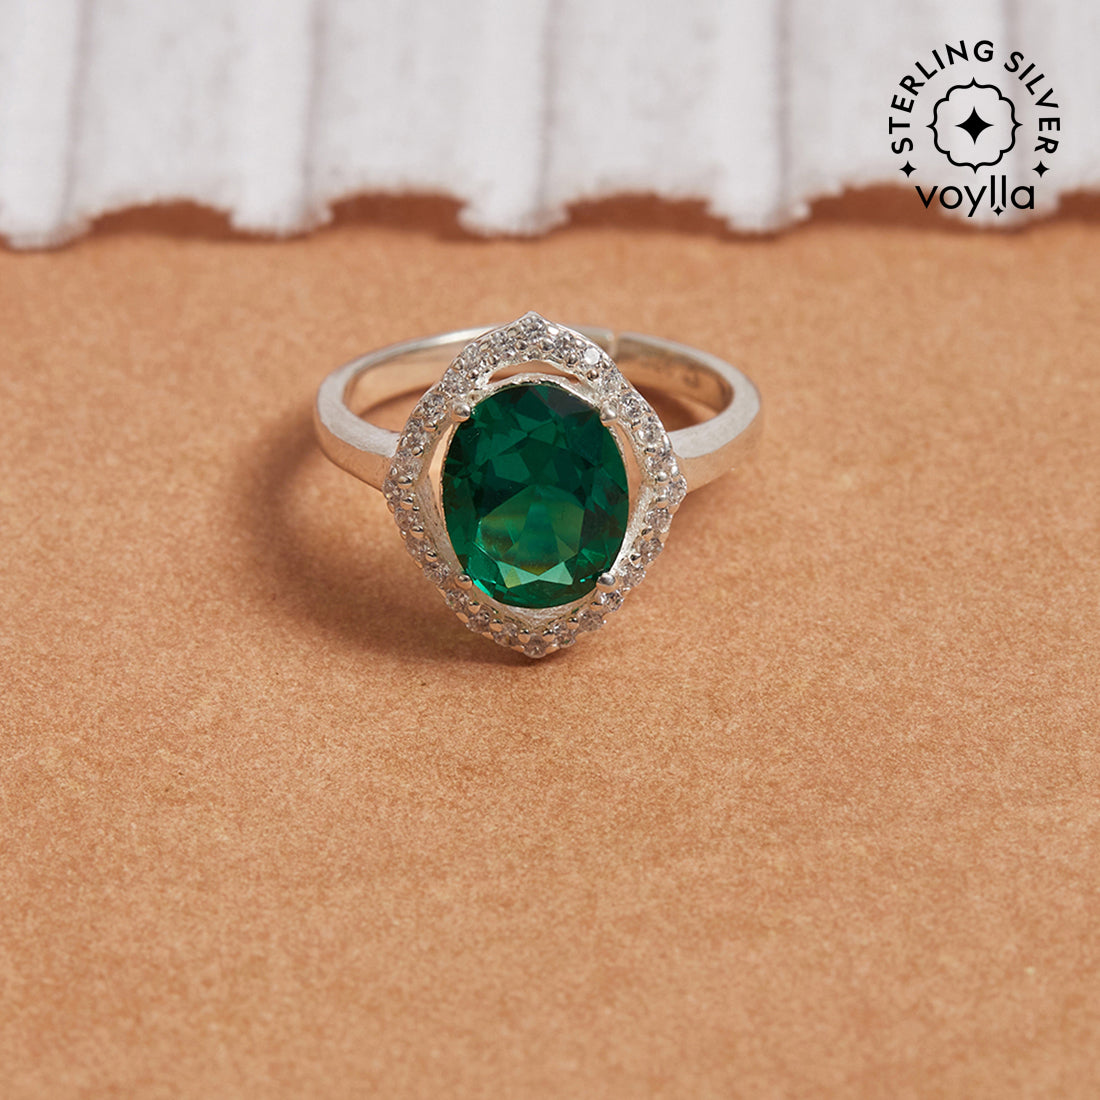 Natural Genuine Emerald Rings, 2 Carat Emerald Engagement rings, Silver  Rings | eBay